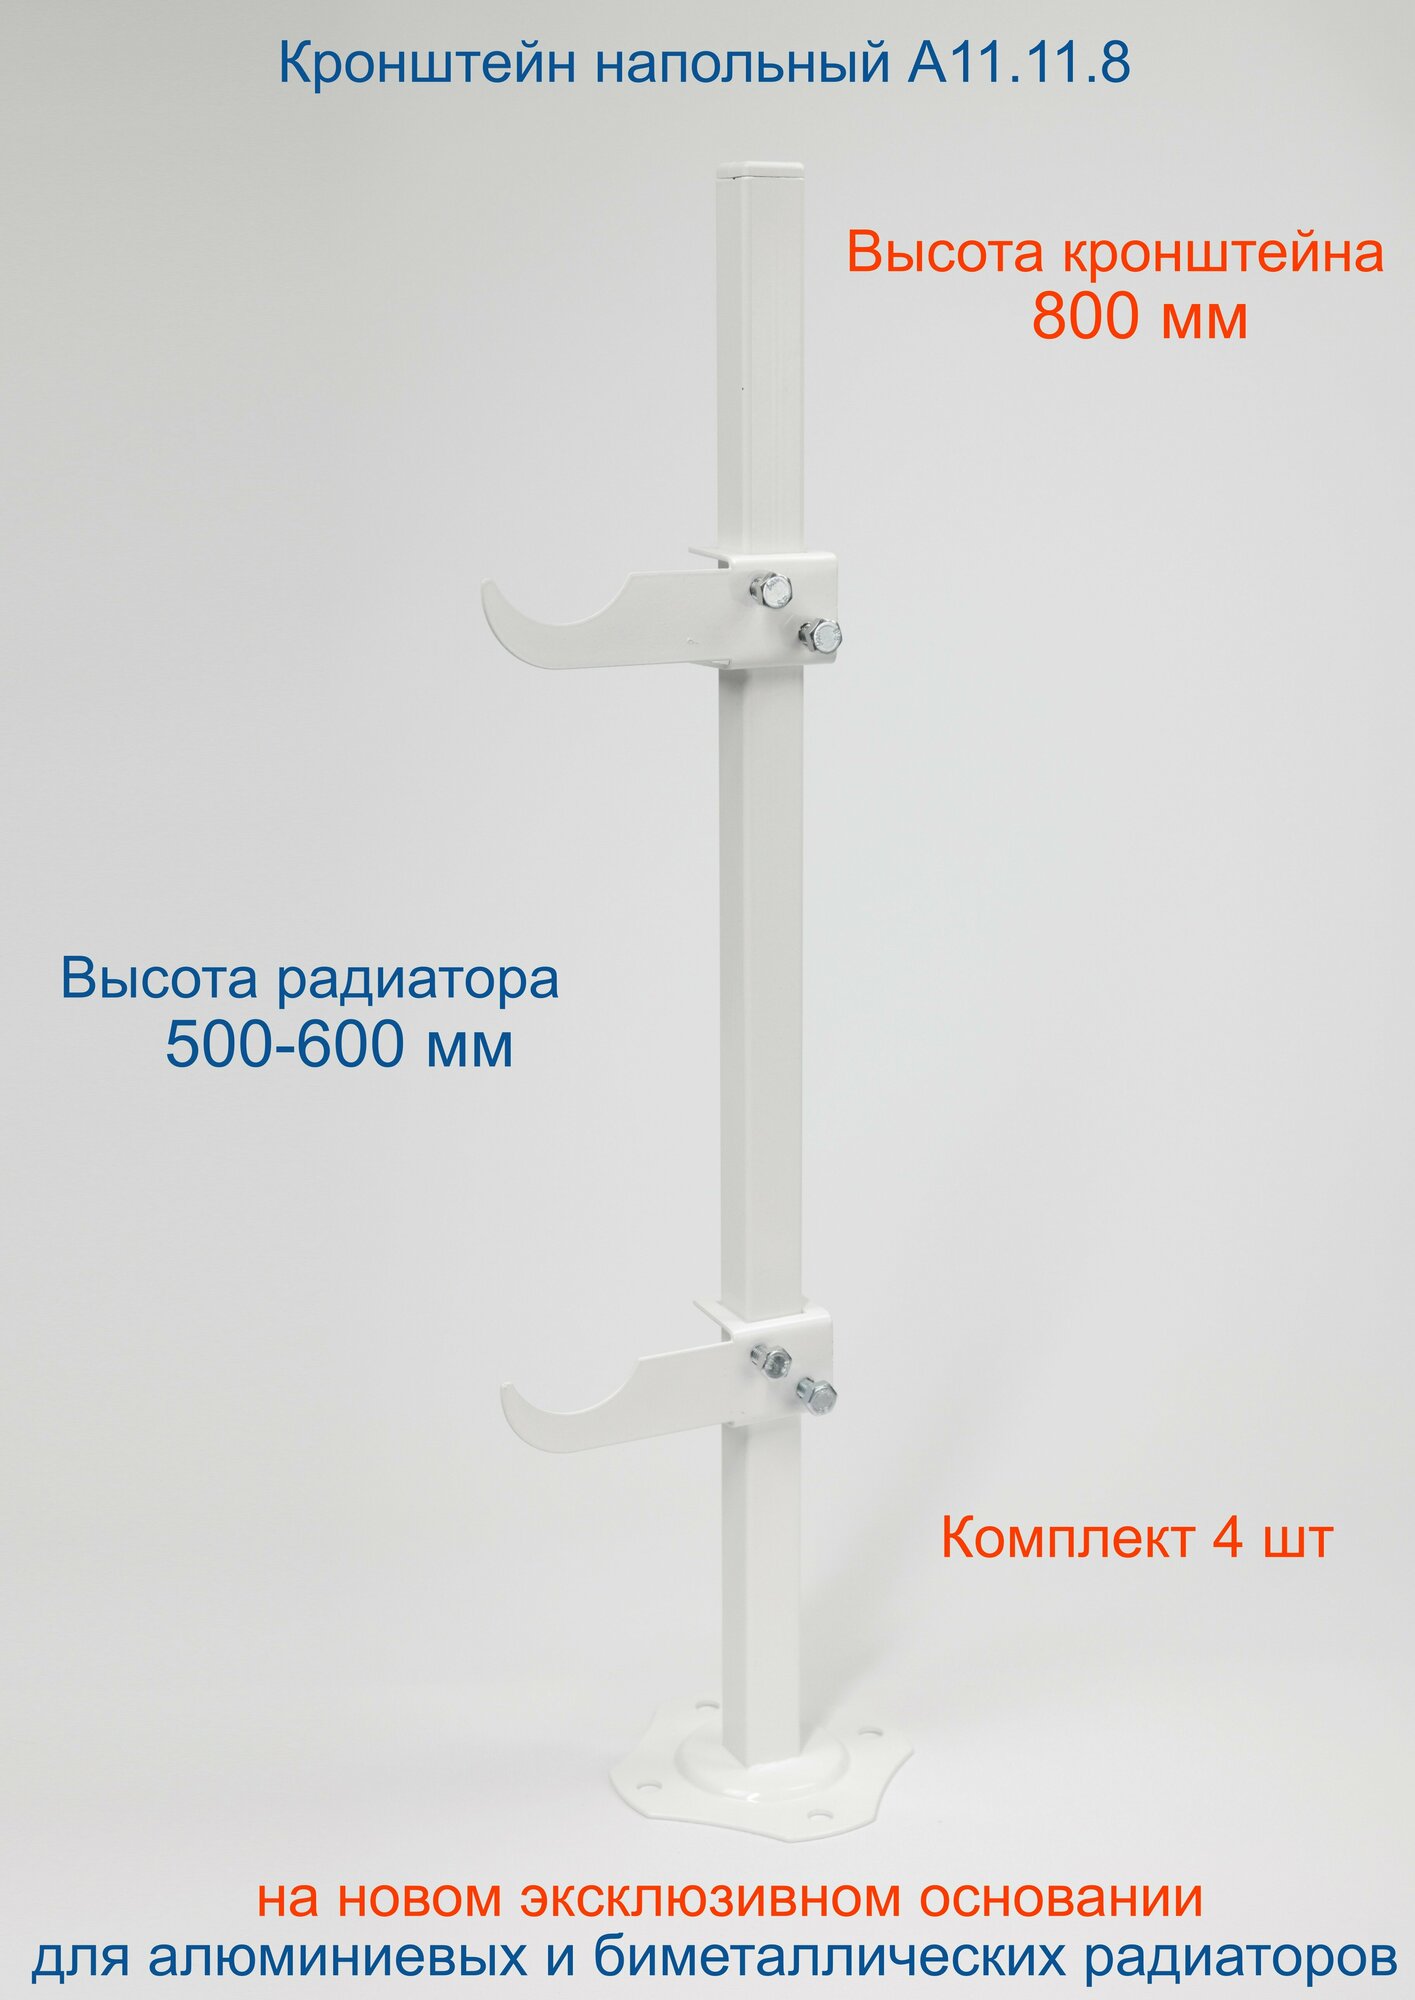 Кронштейн напольный регулируемый Кайрос А11.11.8 для алюминиевых и биметаллических радиаторов высотой 500-600 мм (высота стойки 800 мм), комплект 4 шт